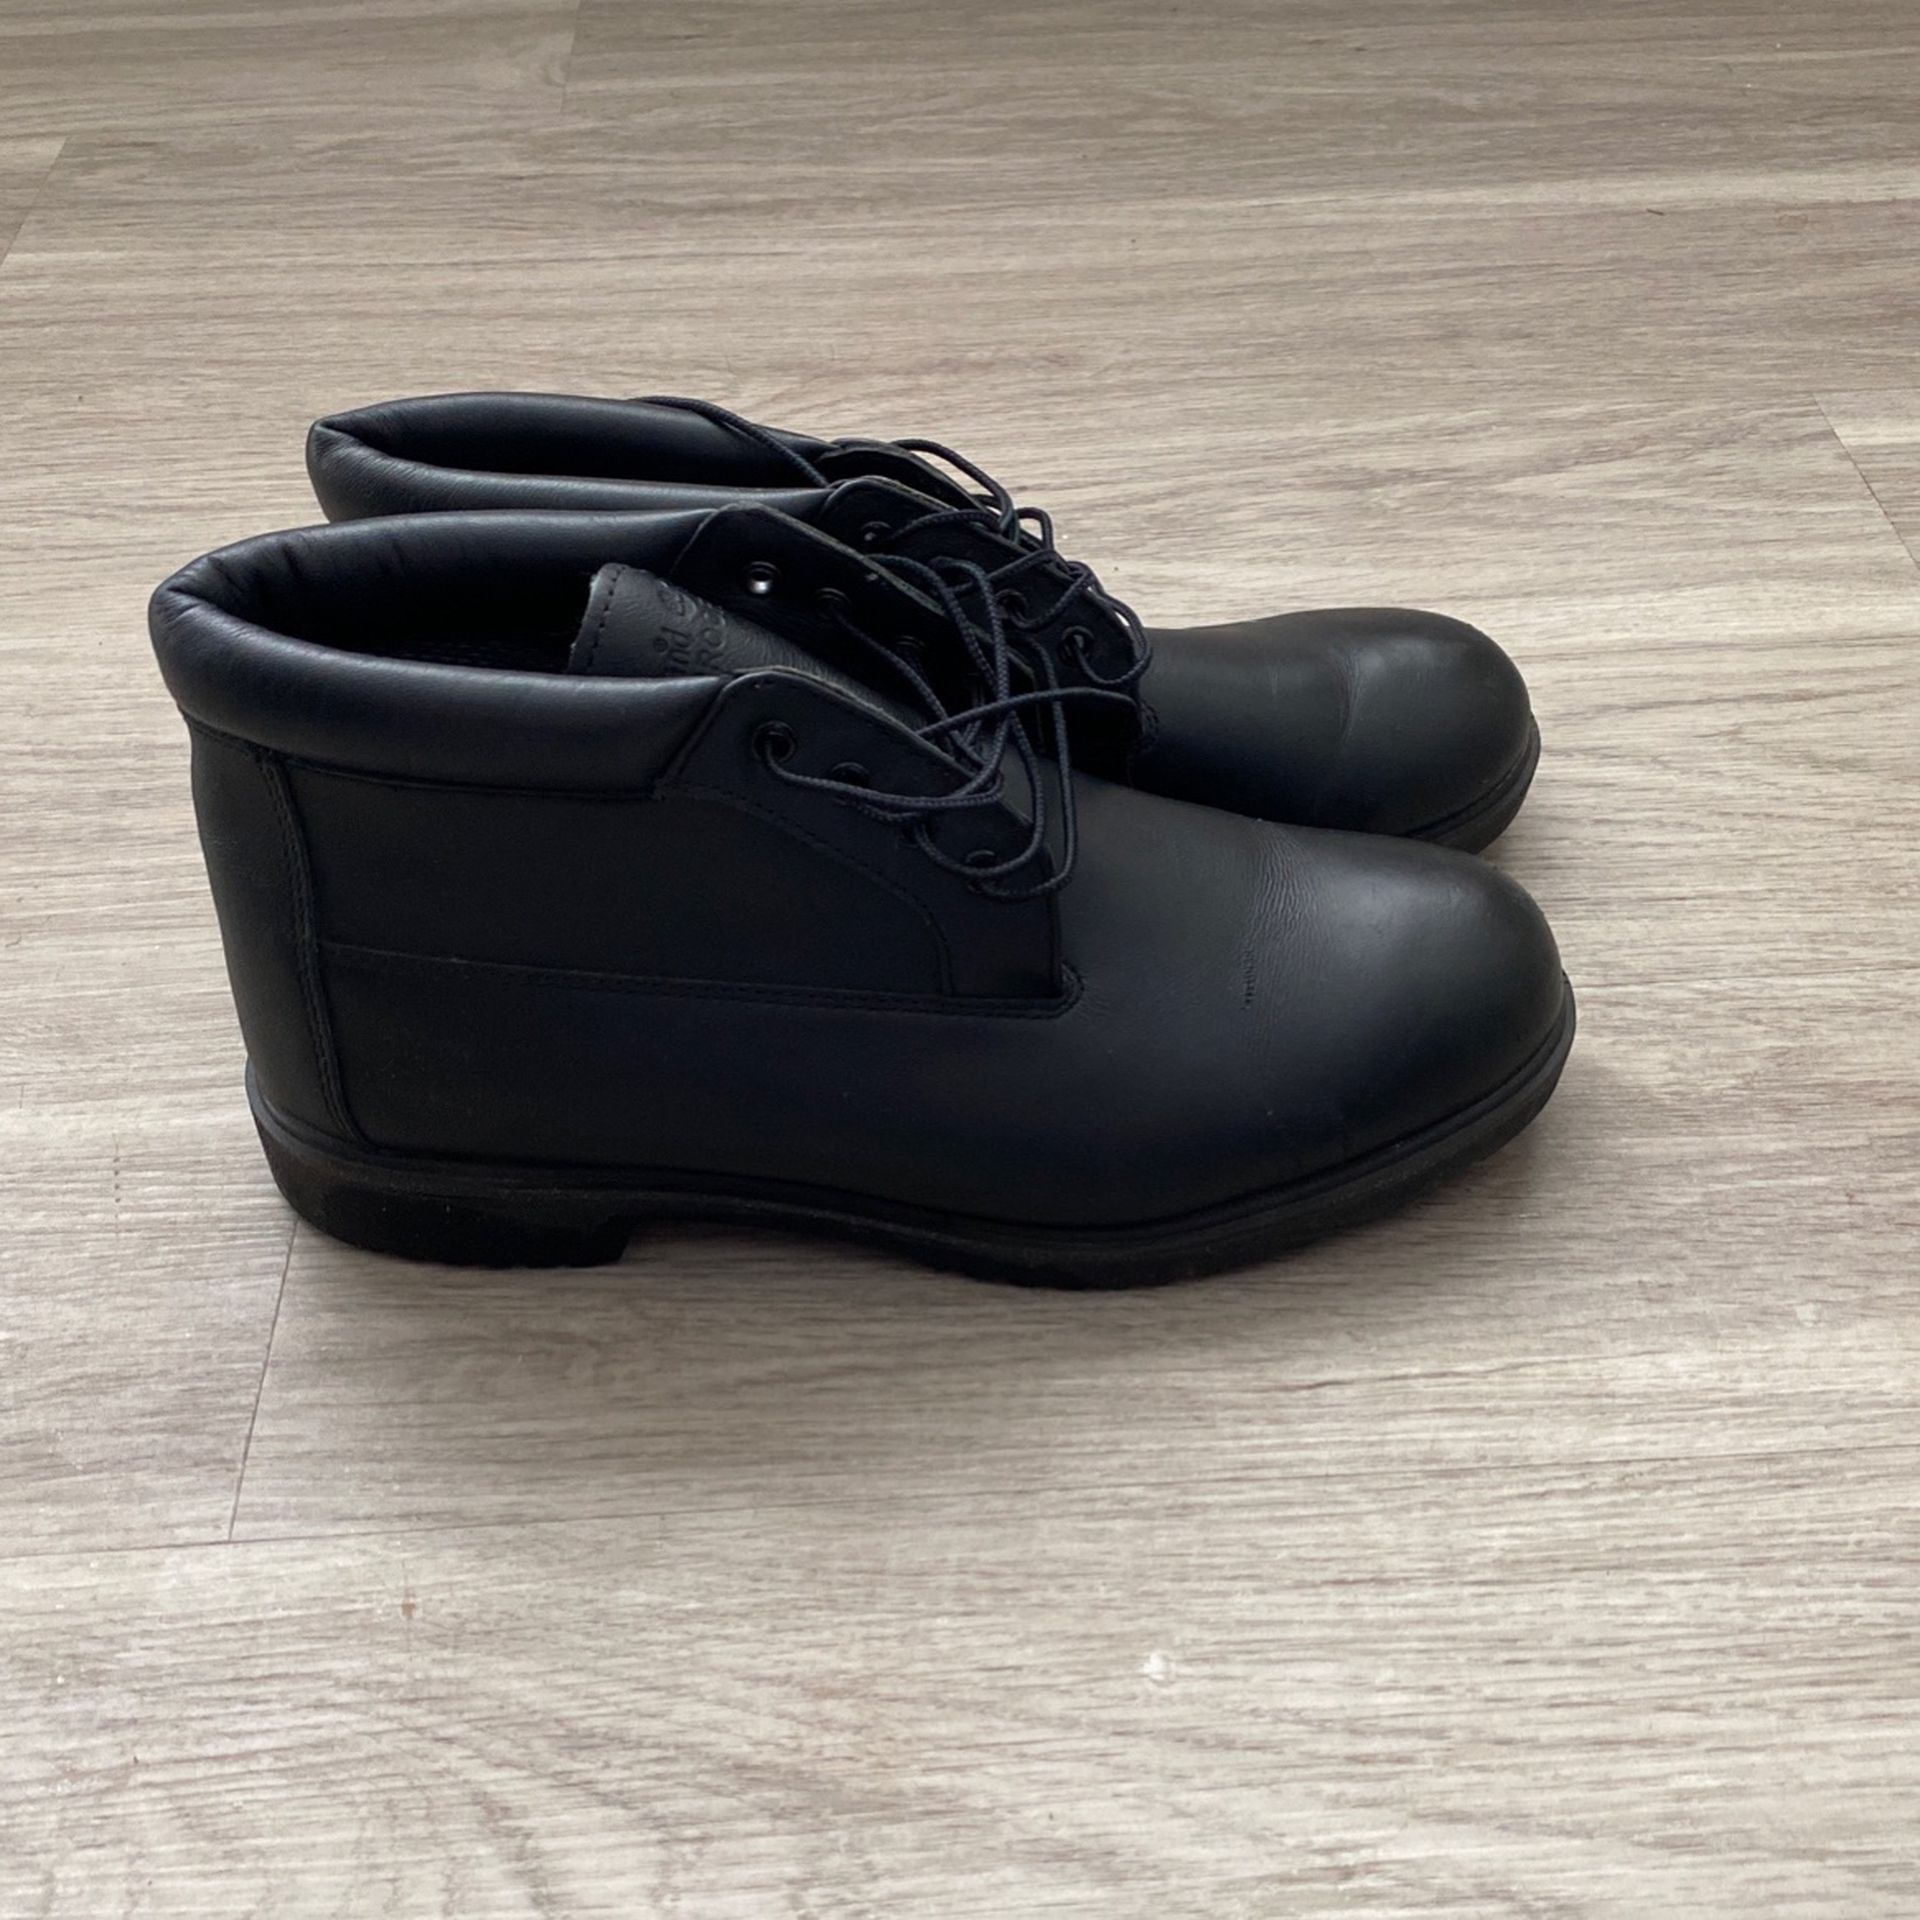 Timberland Black Chukka Boots Size 12